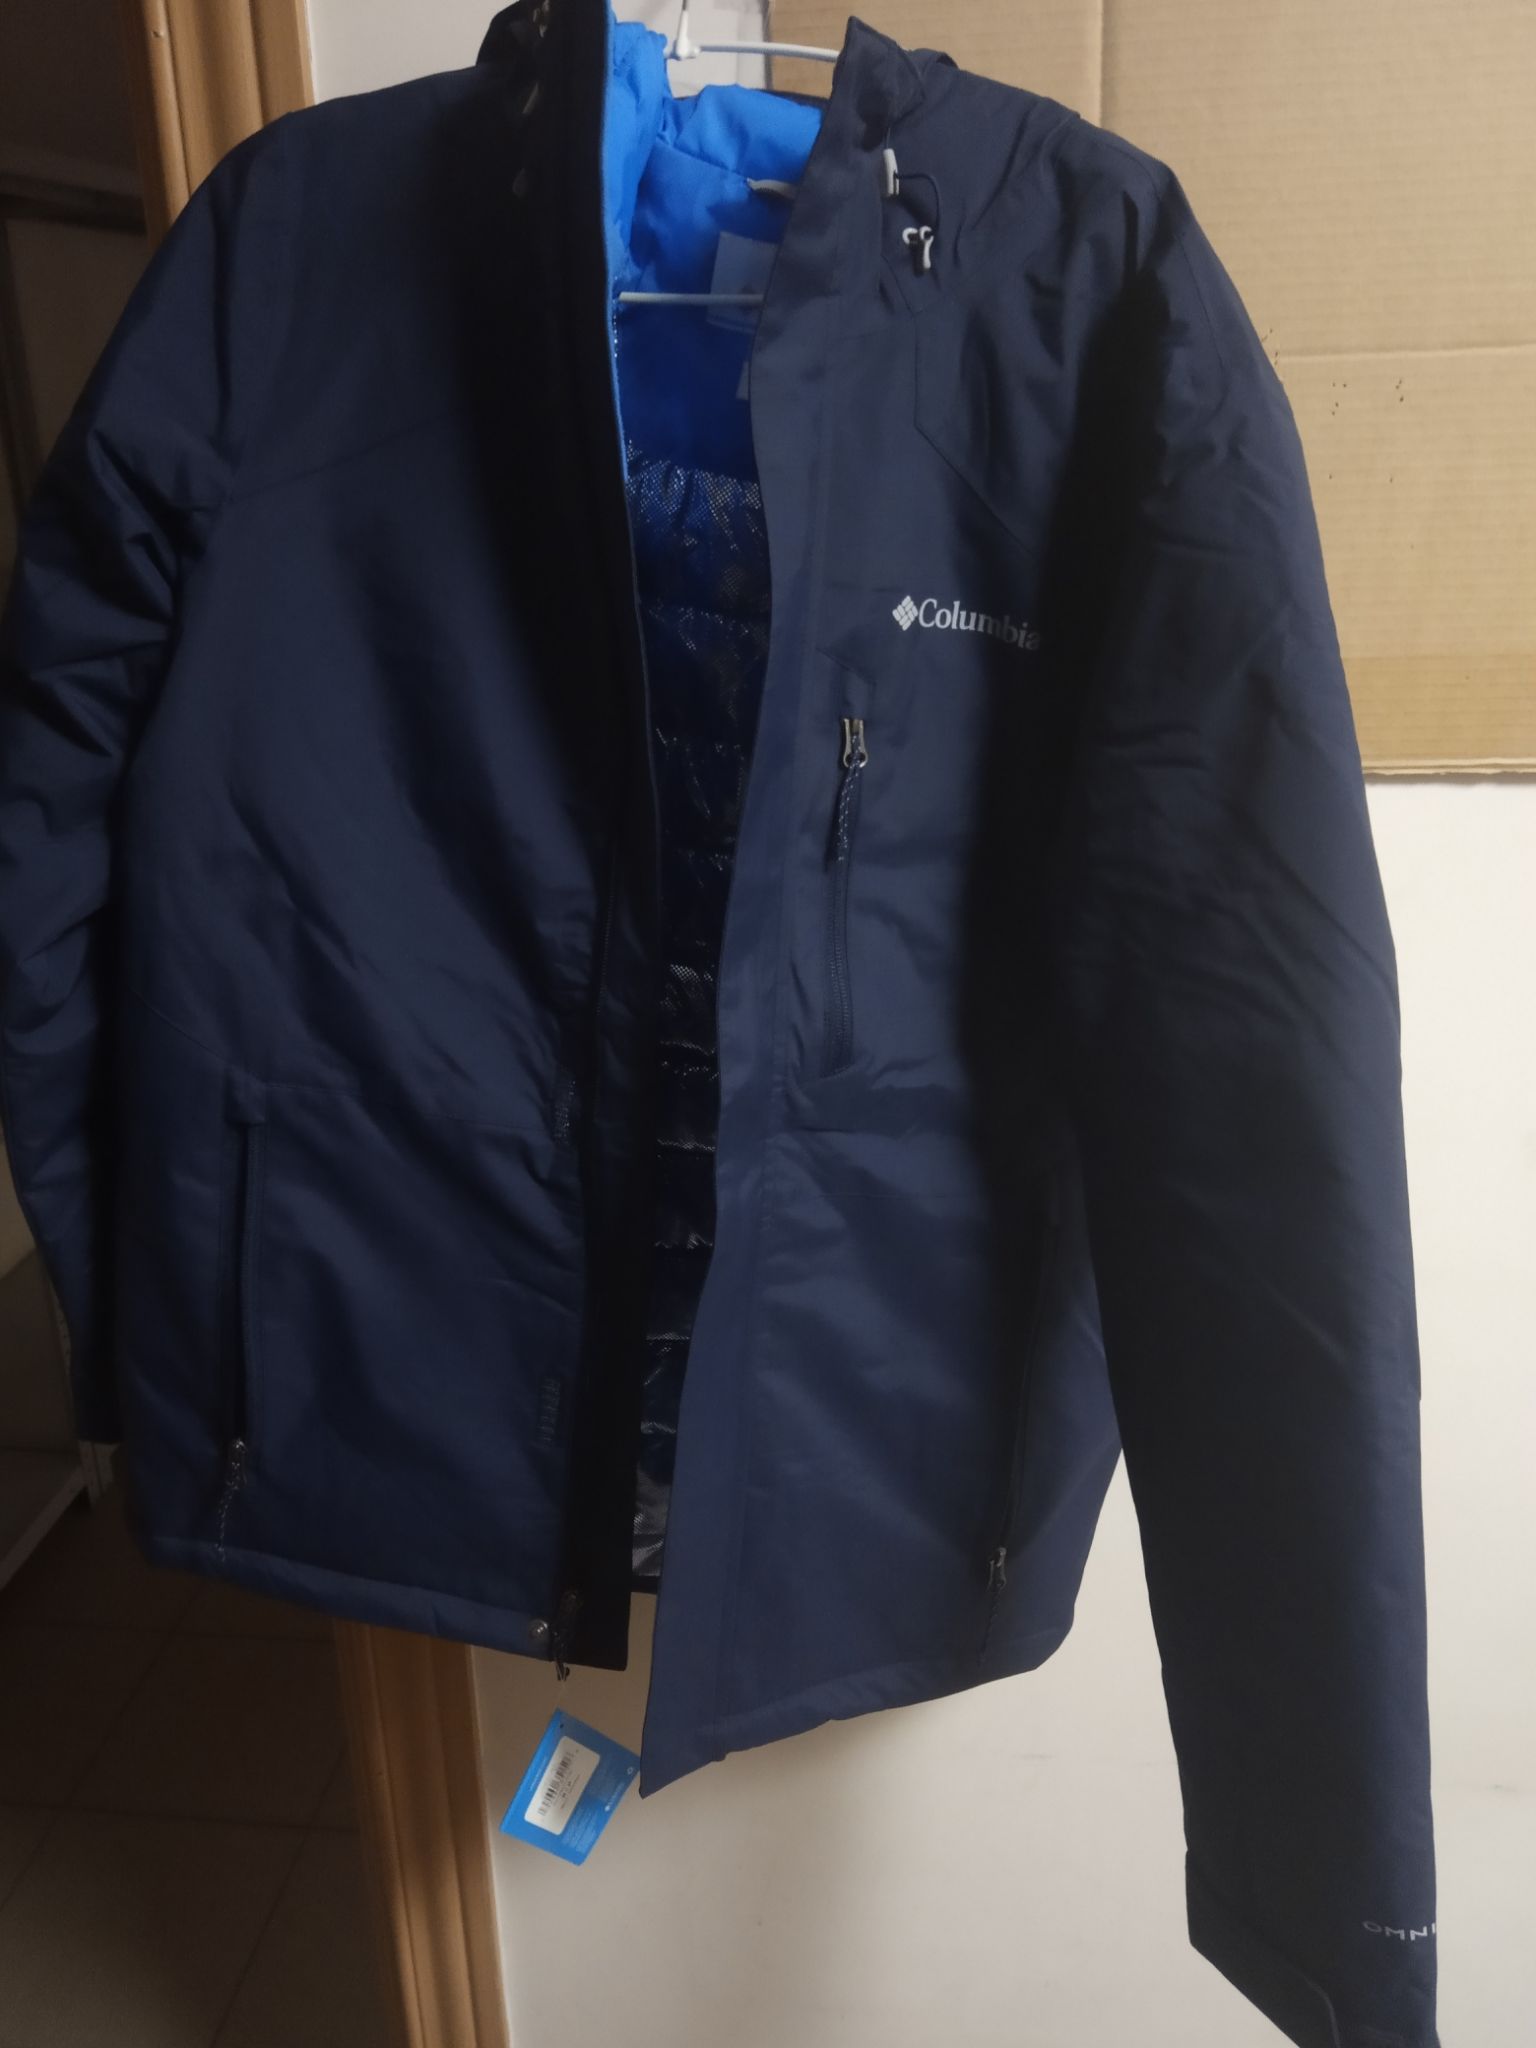 murr peak ii jacket